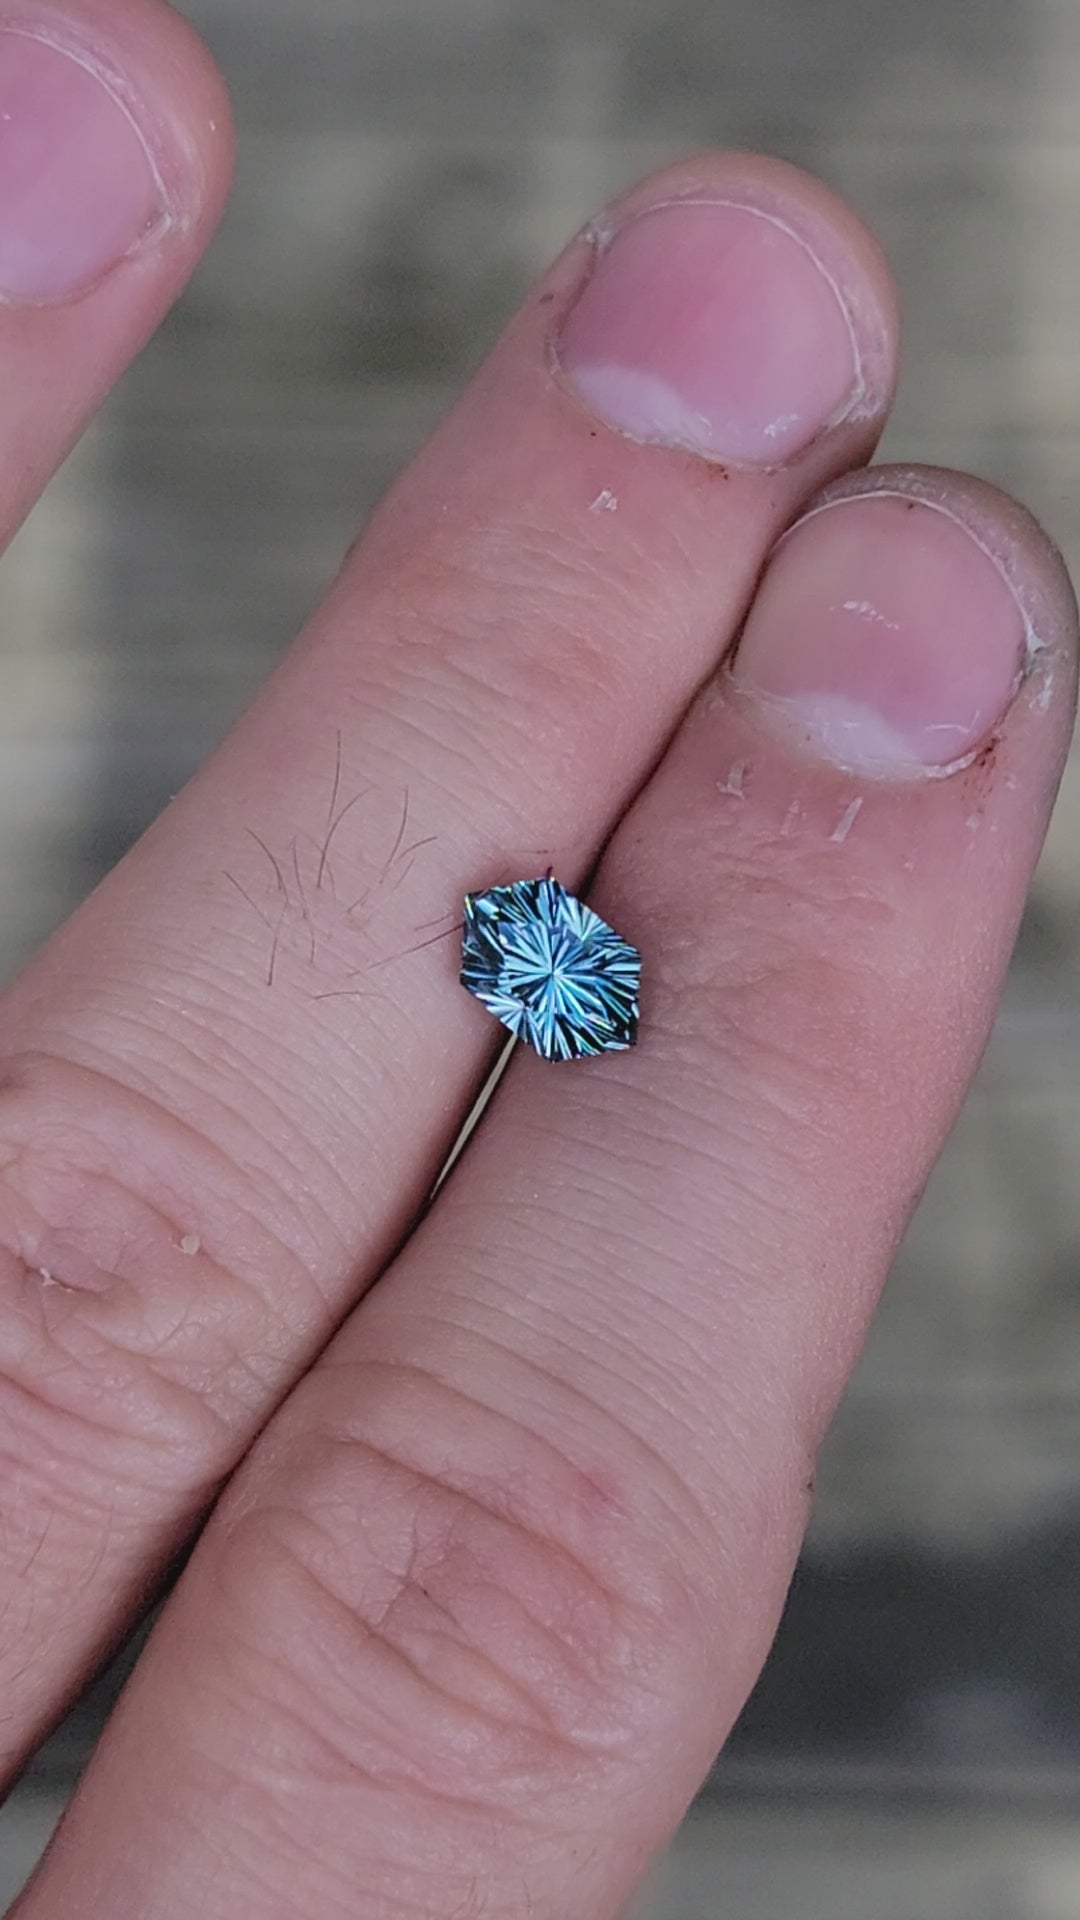 Hexagone saphir du Montana bleu sarcelle 2,2 carats - Taille fantaisie, 9,2 x 5,7 mm